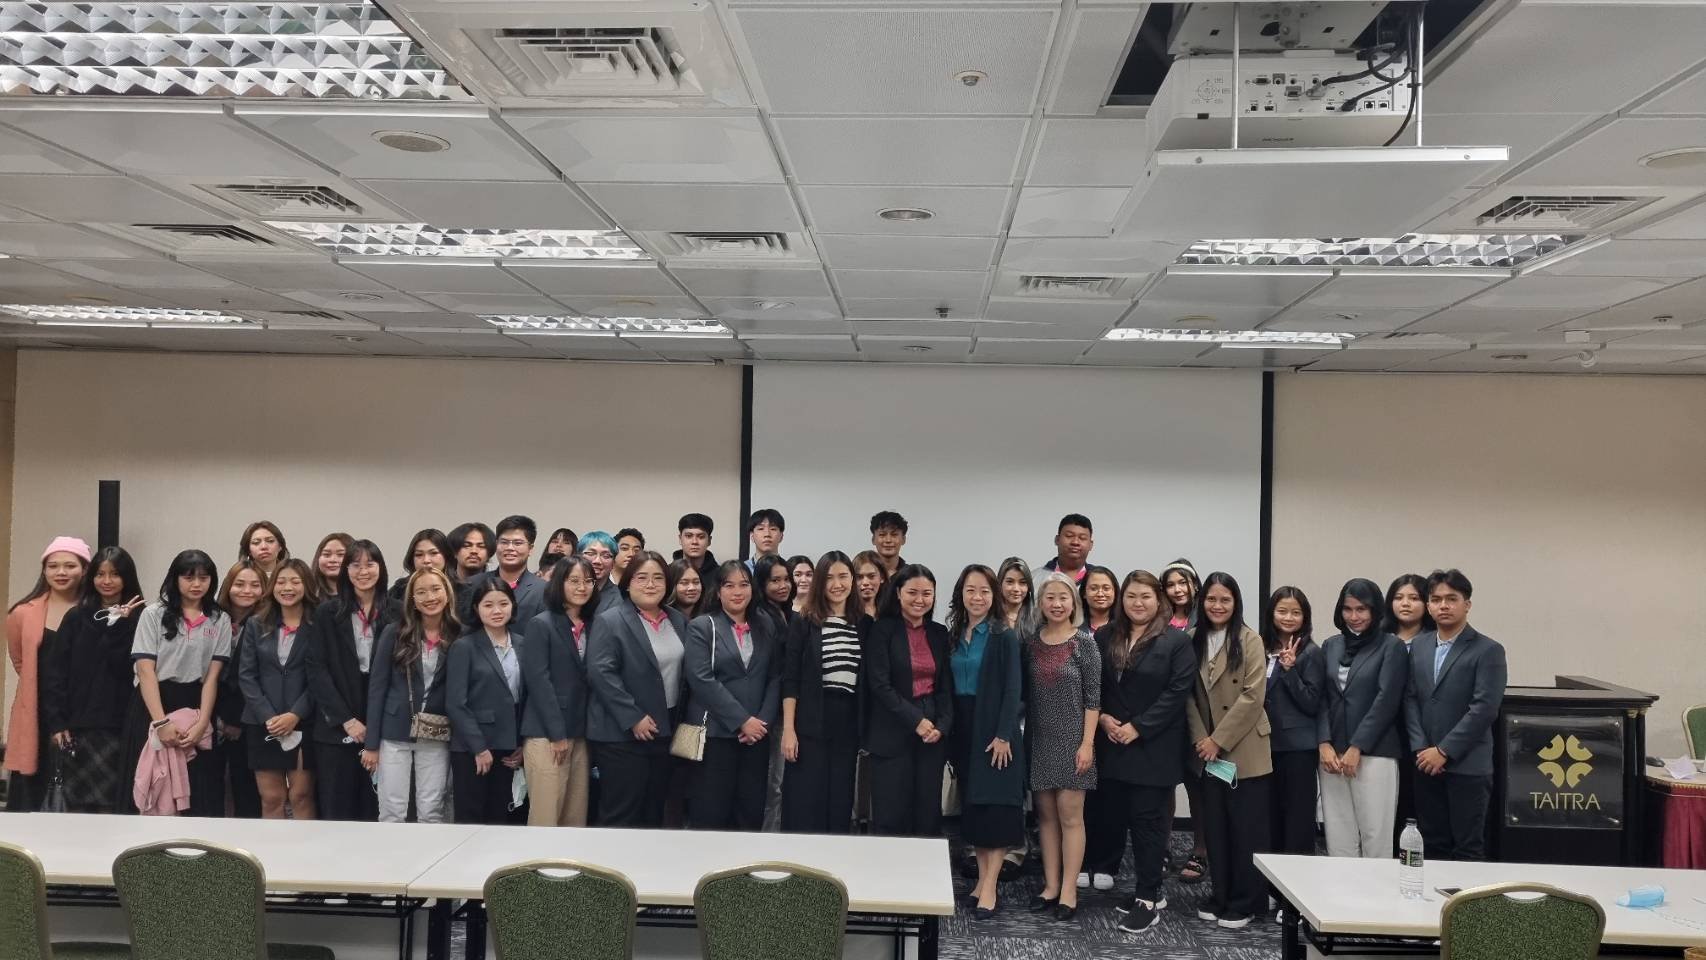 BBA ASEAN Trip at Taiwan (Year 3 students)